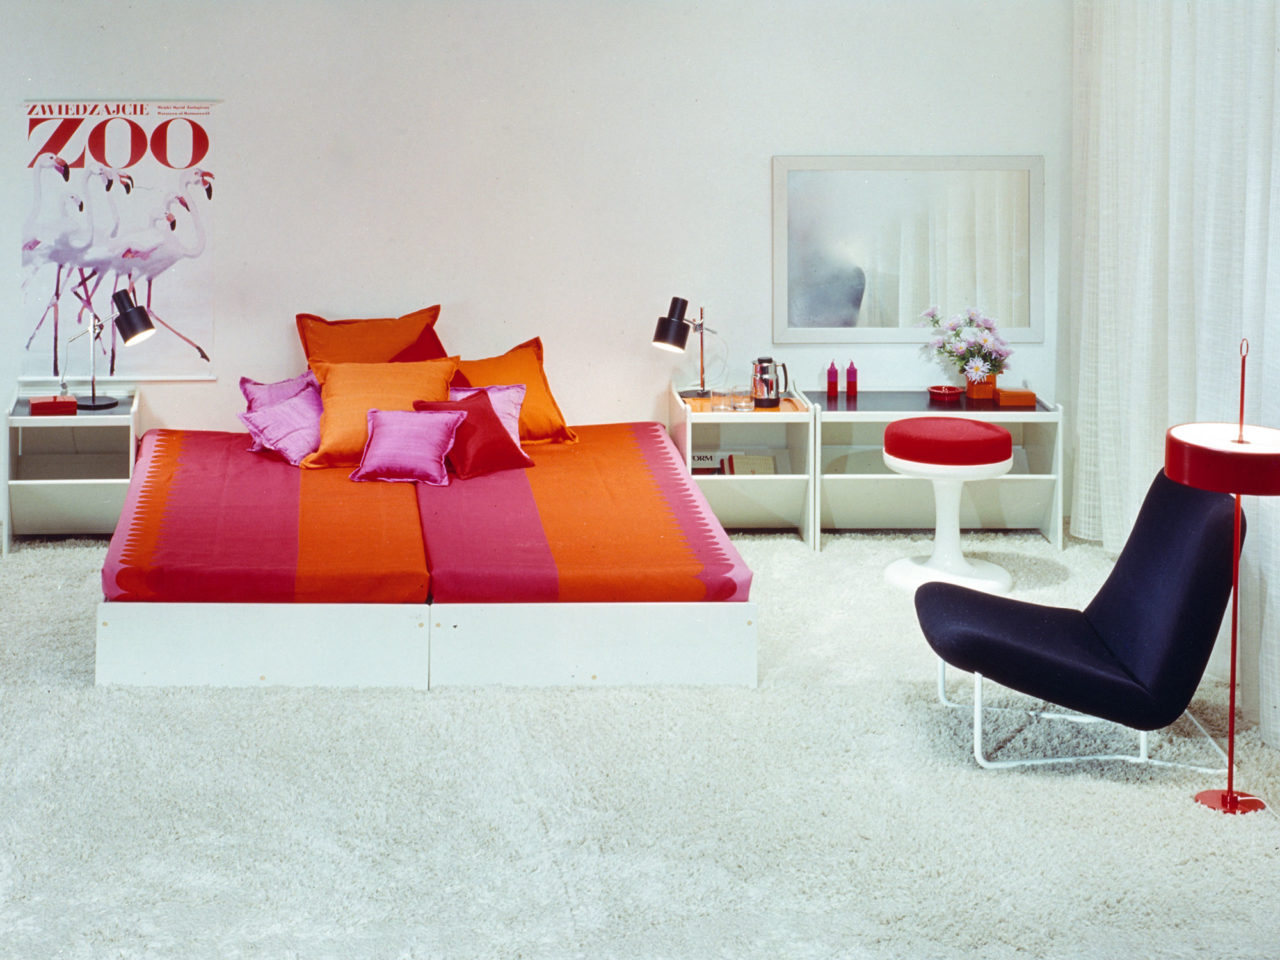 Weißes Schlafzimmer mit bunten Details, HEPP Bett, rosa- und orangefarbene Textilien, die an Bonbonpapier erinnern.